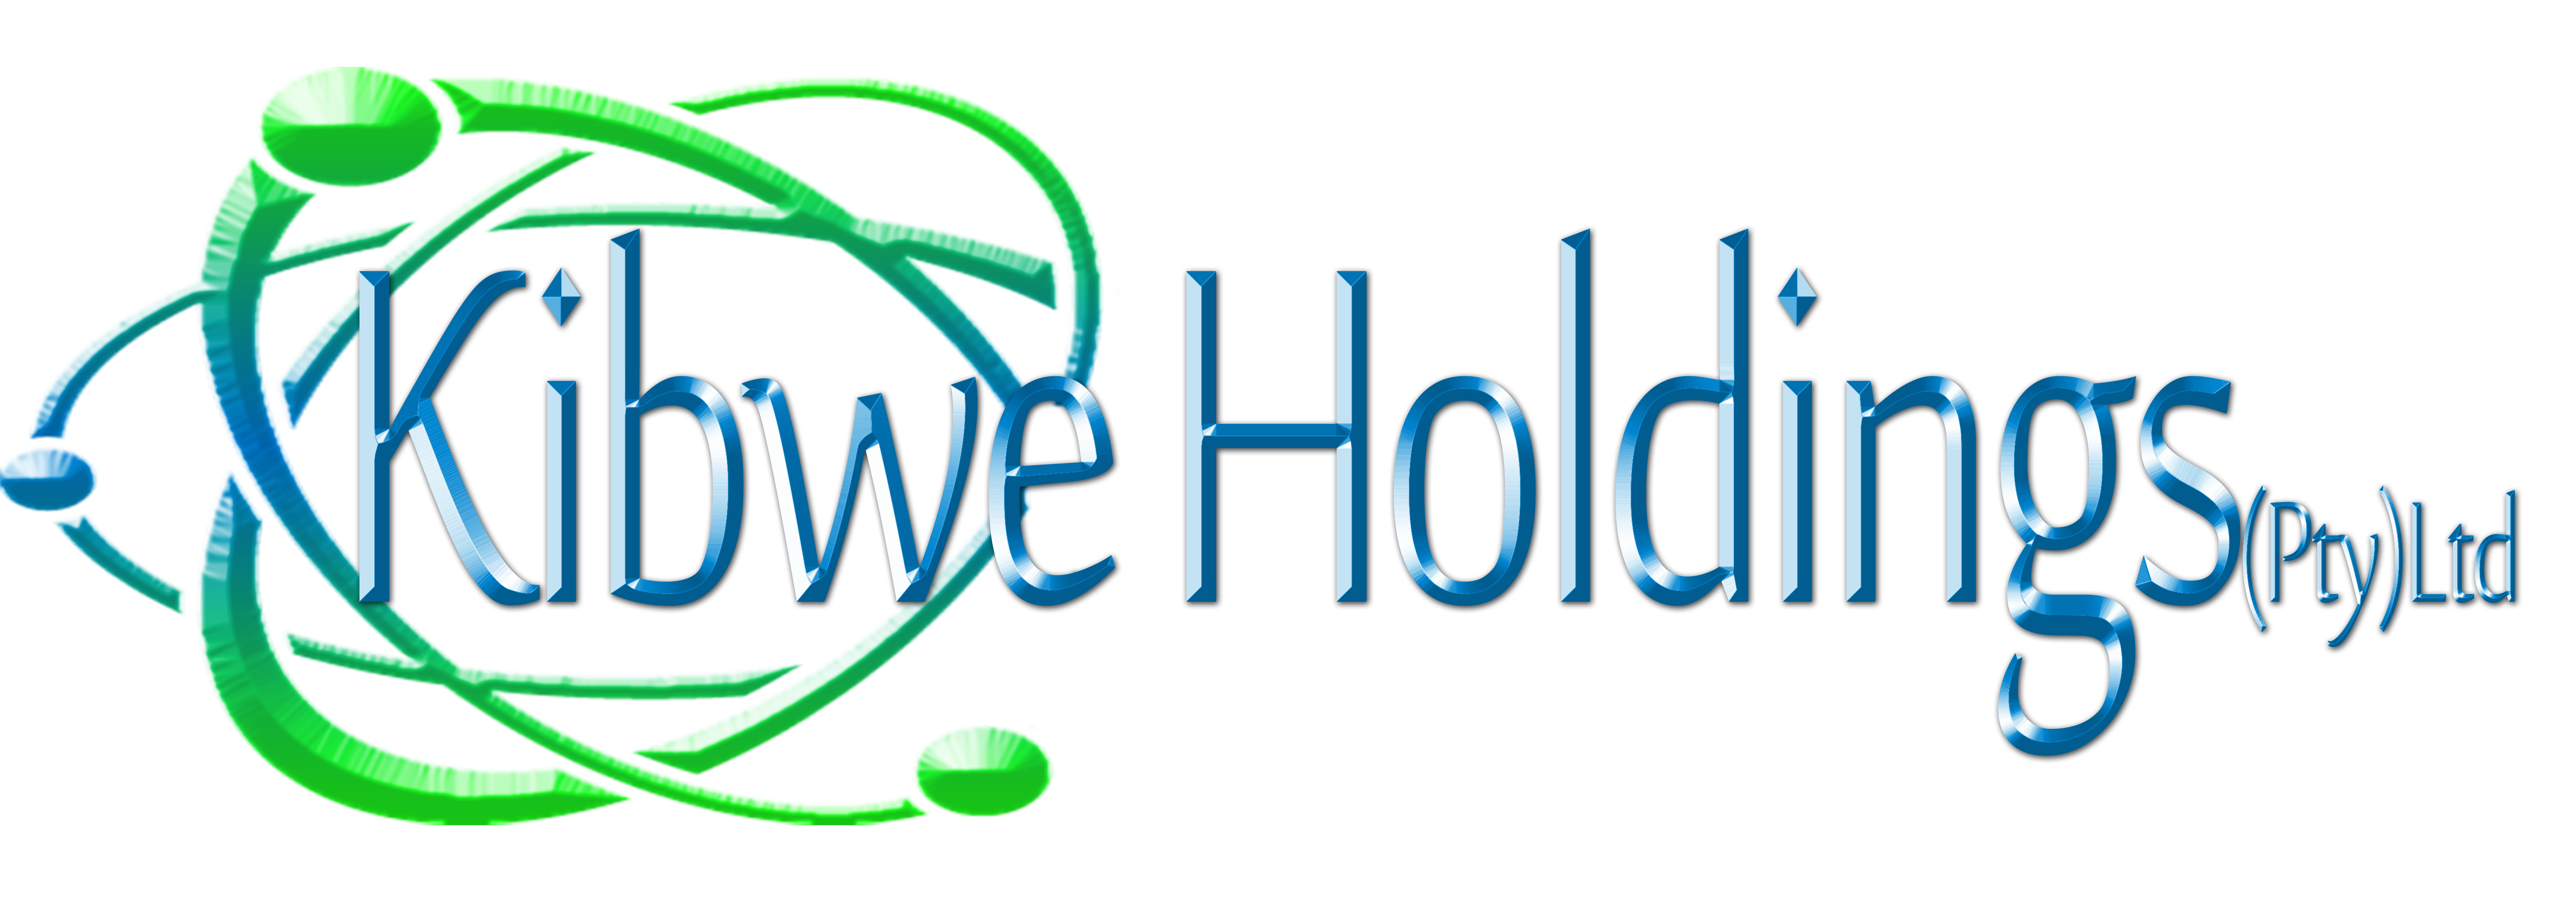 Kibwe Holdings (Pty) Ltd (Unverified) logo